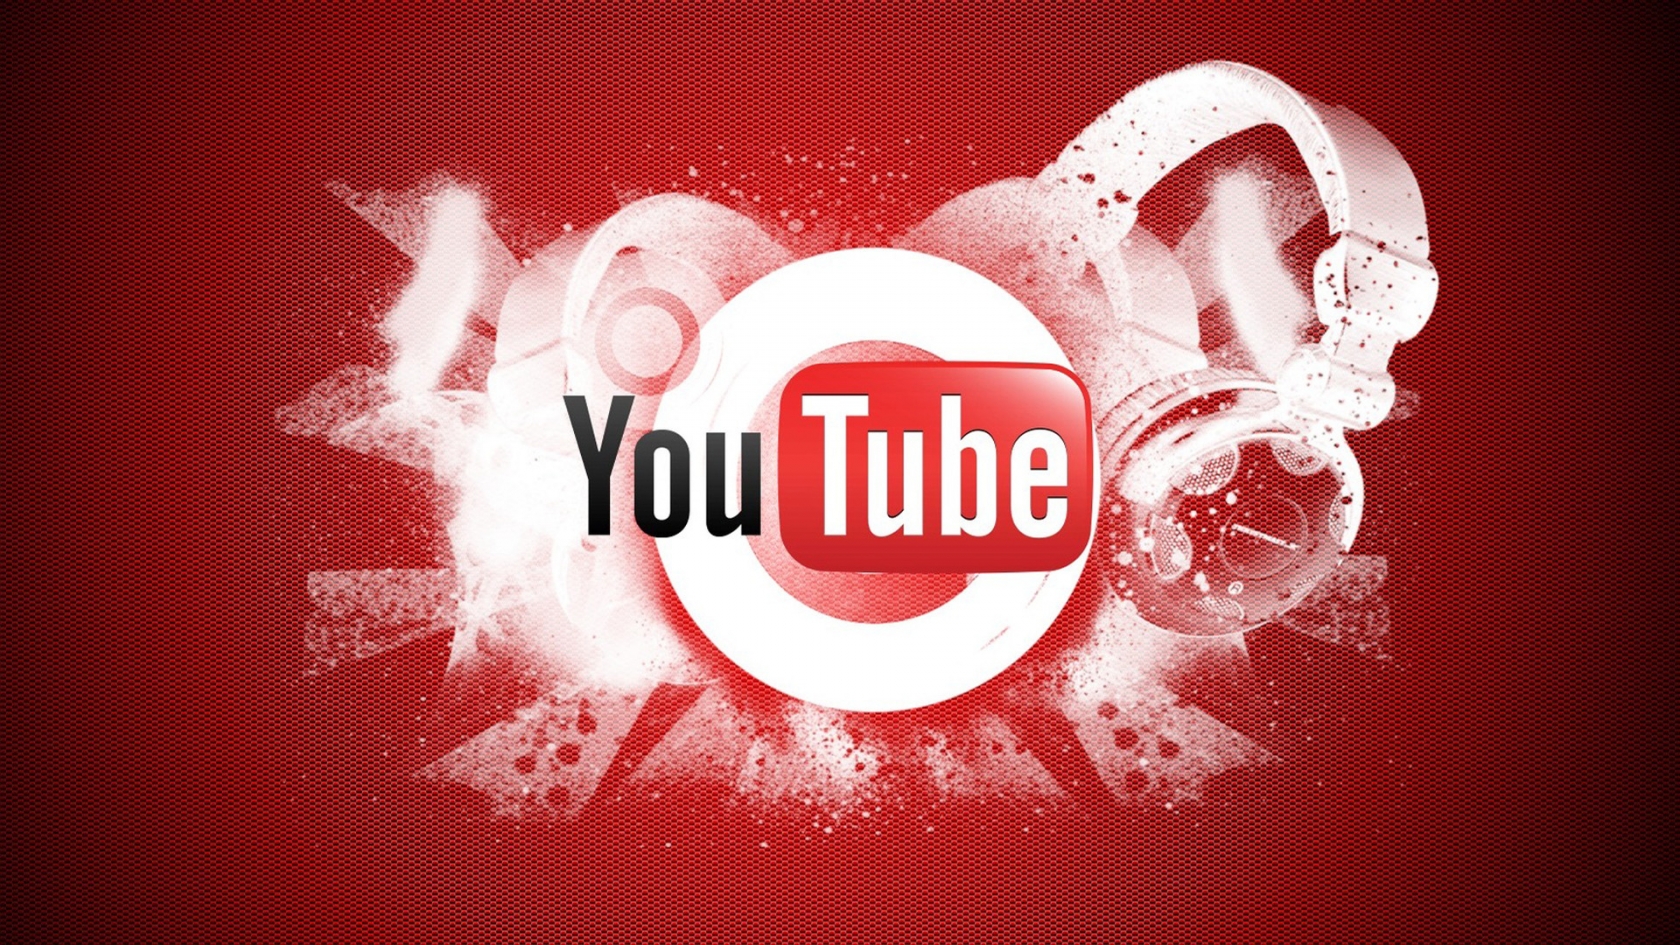 YouTube Logo for 1680 x 945 HDTV resolution